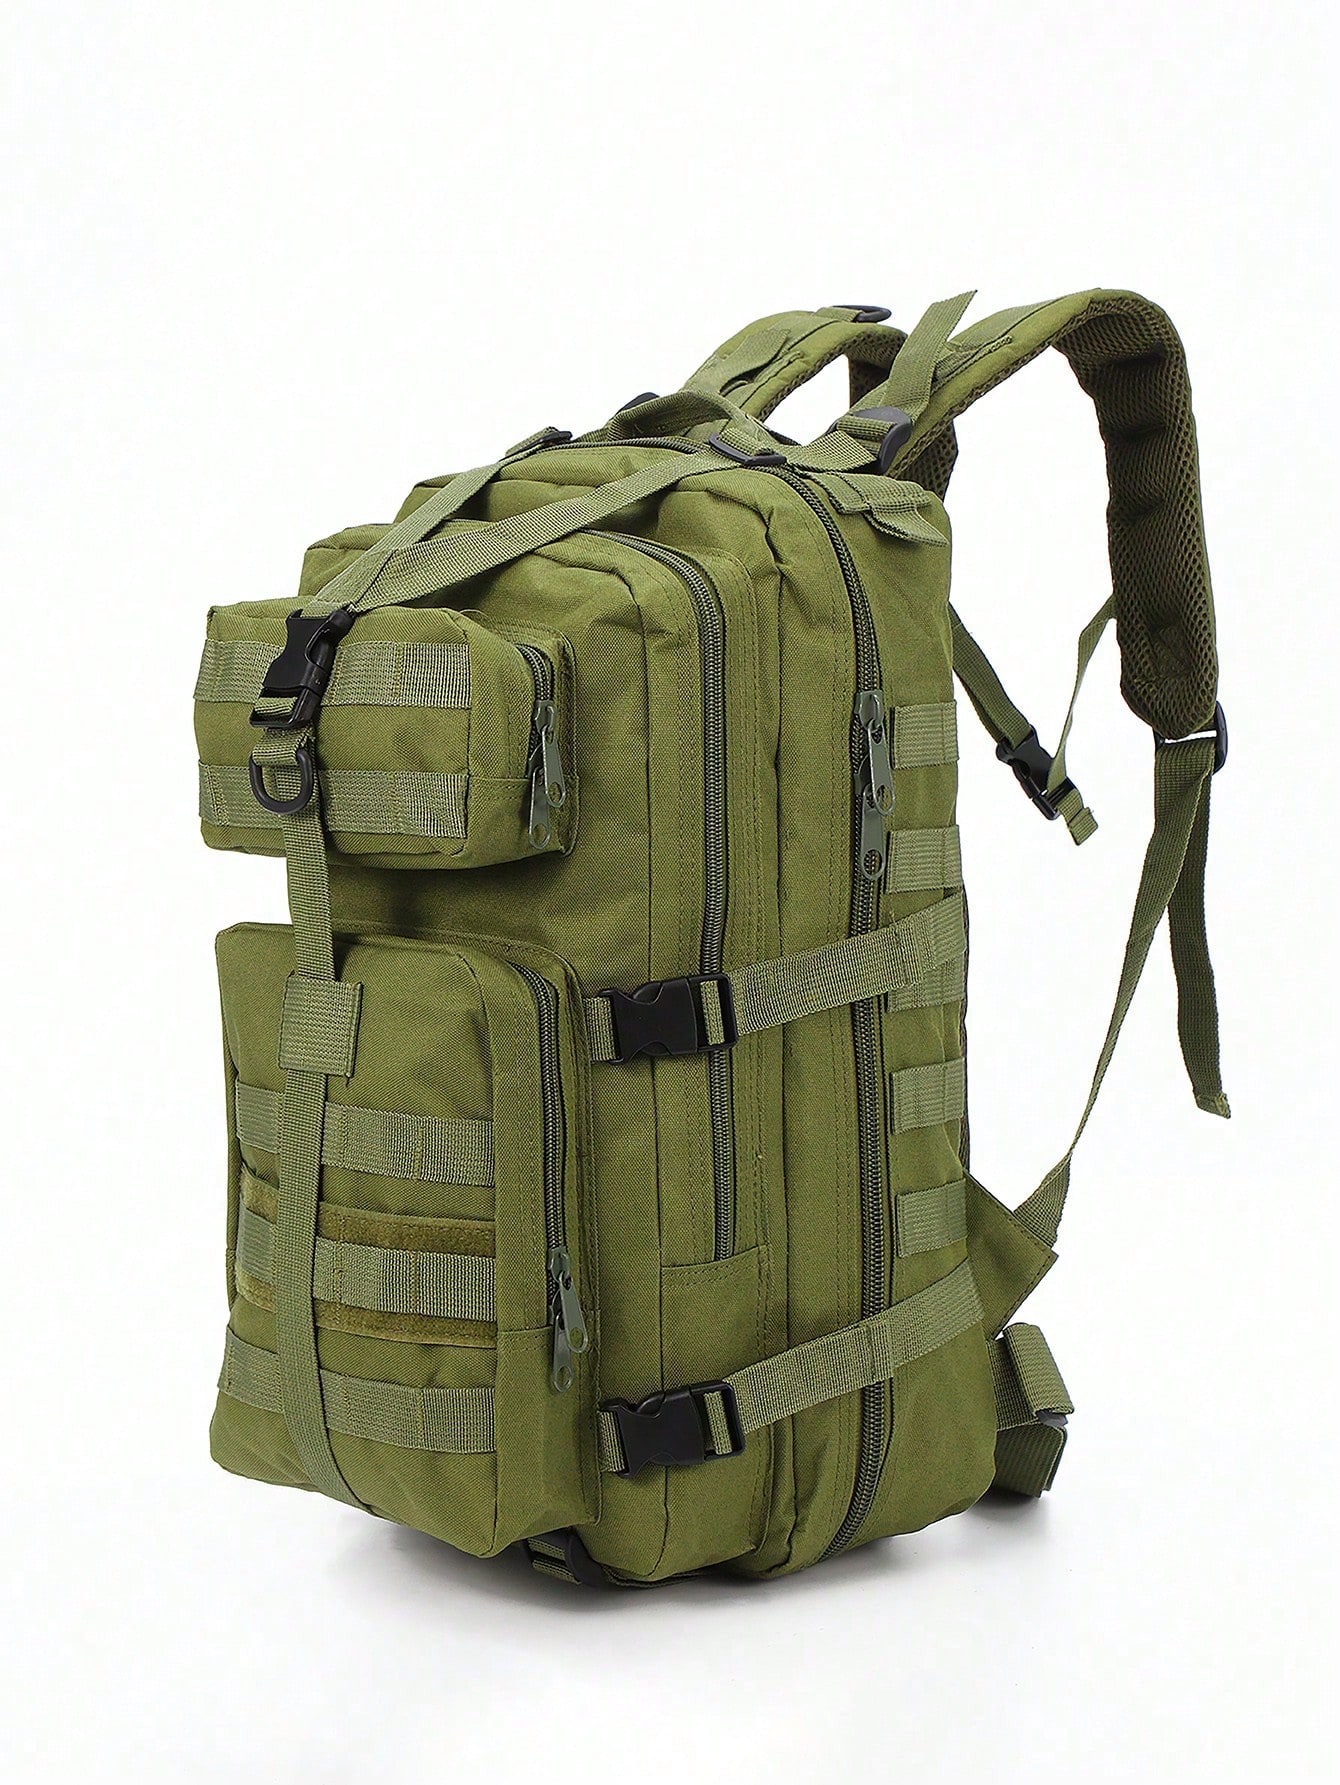 Камуфляжный рюкзак, армейский зеленый полезный альпинистский рюкзак с мощной нагрузкой аксессуар рюкзаки для альпинизма и походов карманный рюкзак уличный рюкзак